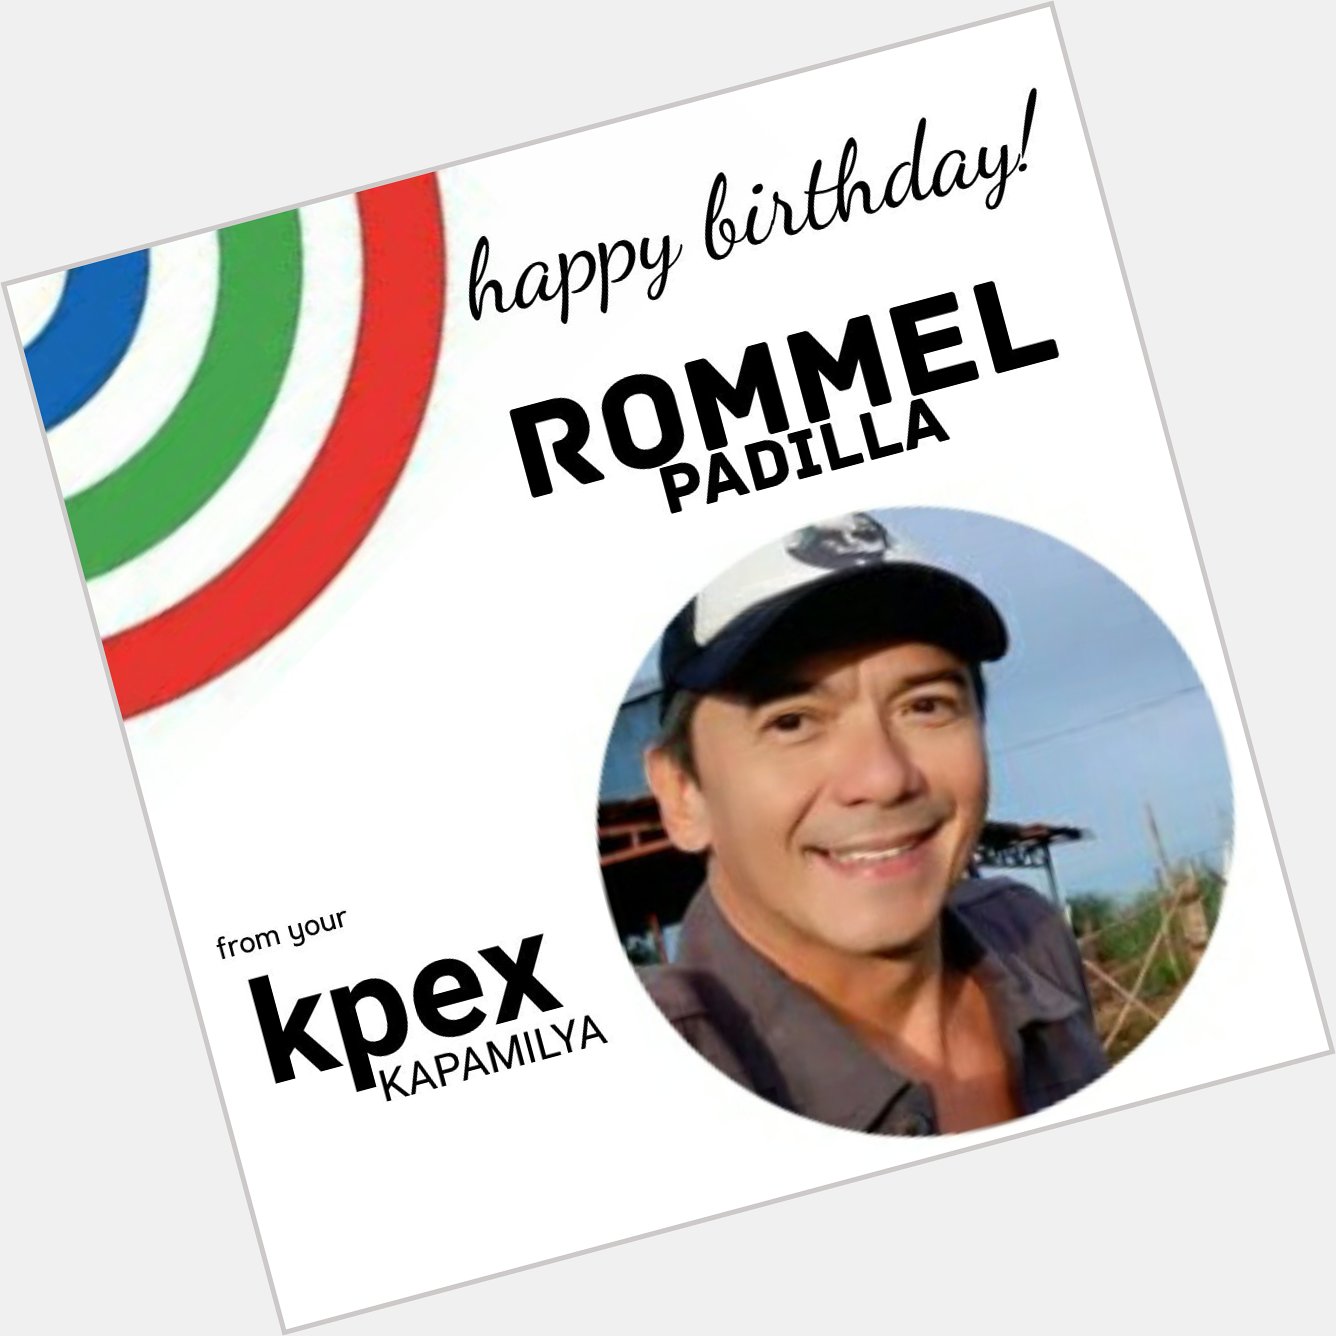 Belated Happy Birthday, Mr. Rommel Padilla from your KPEx Kapamilya! 